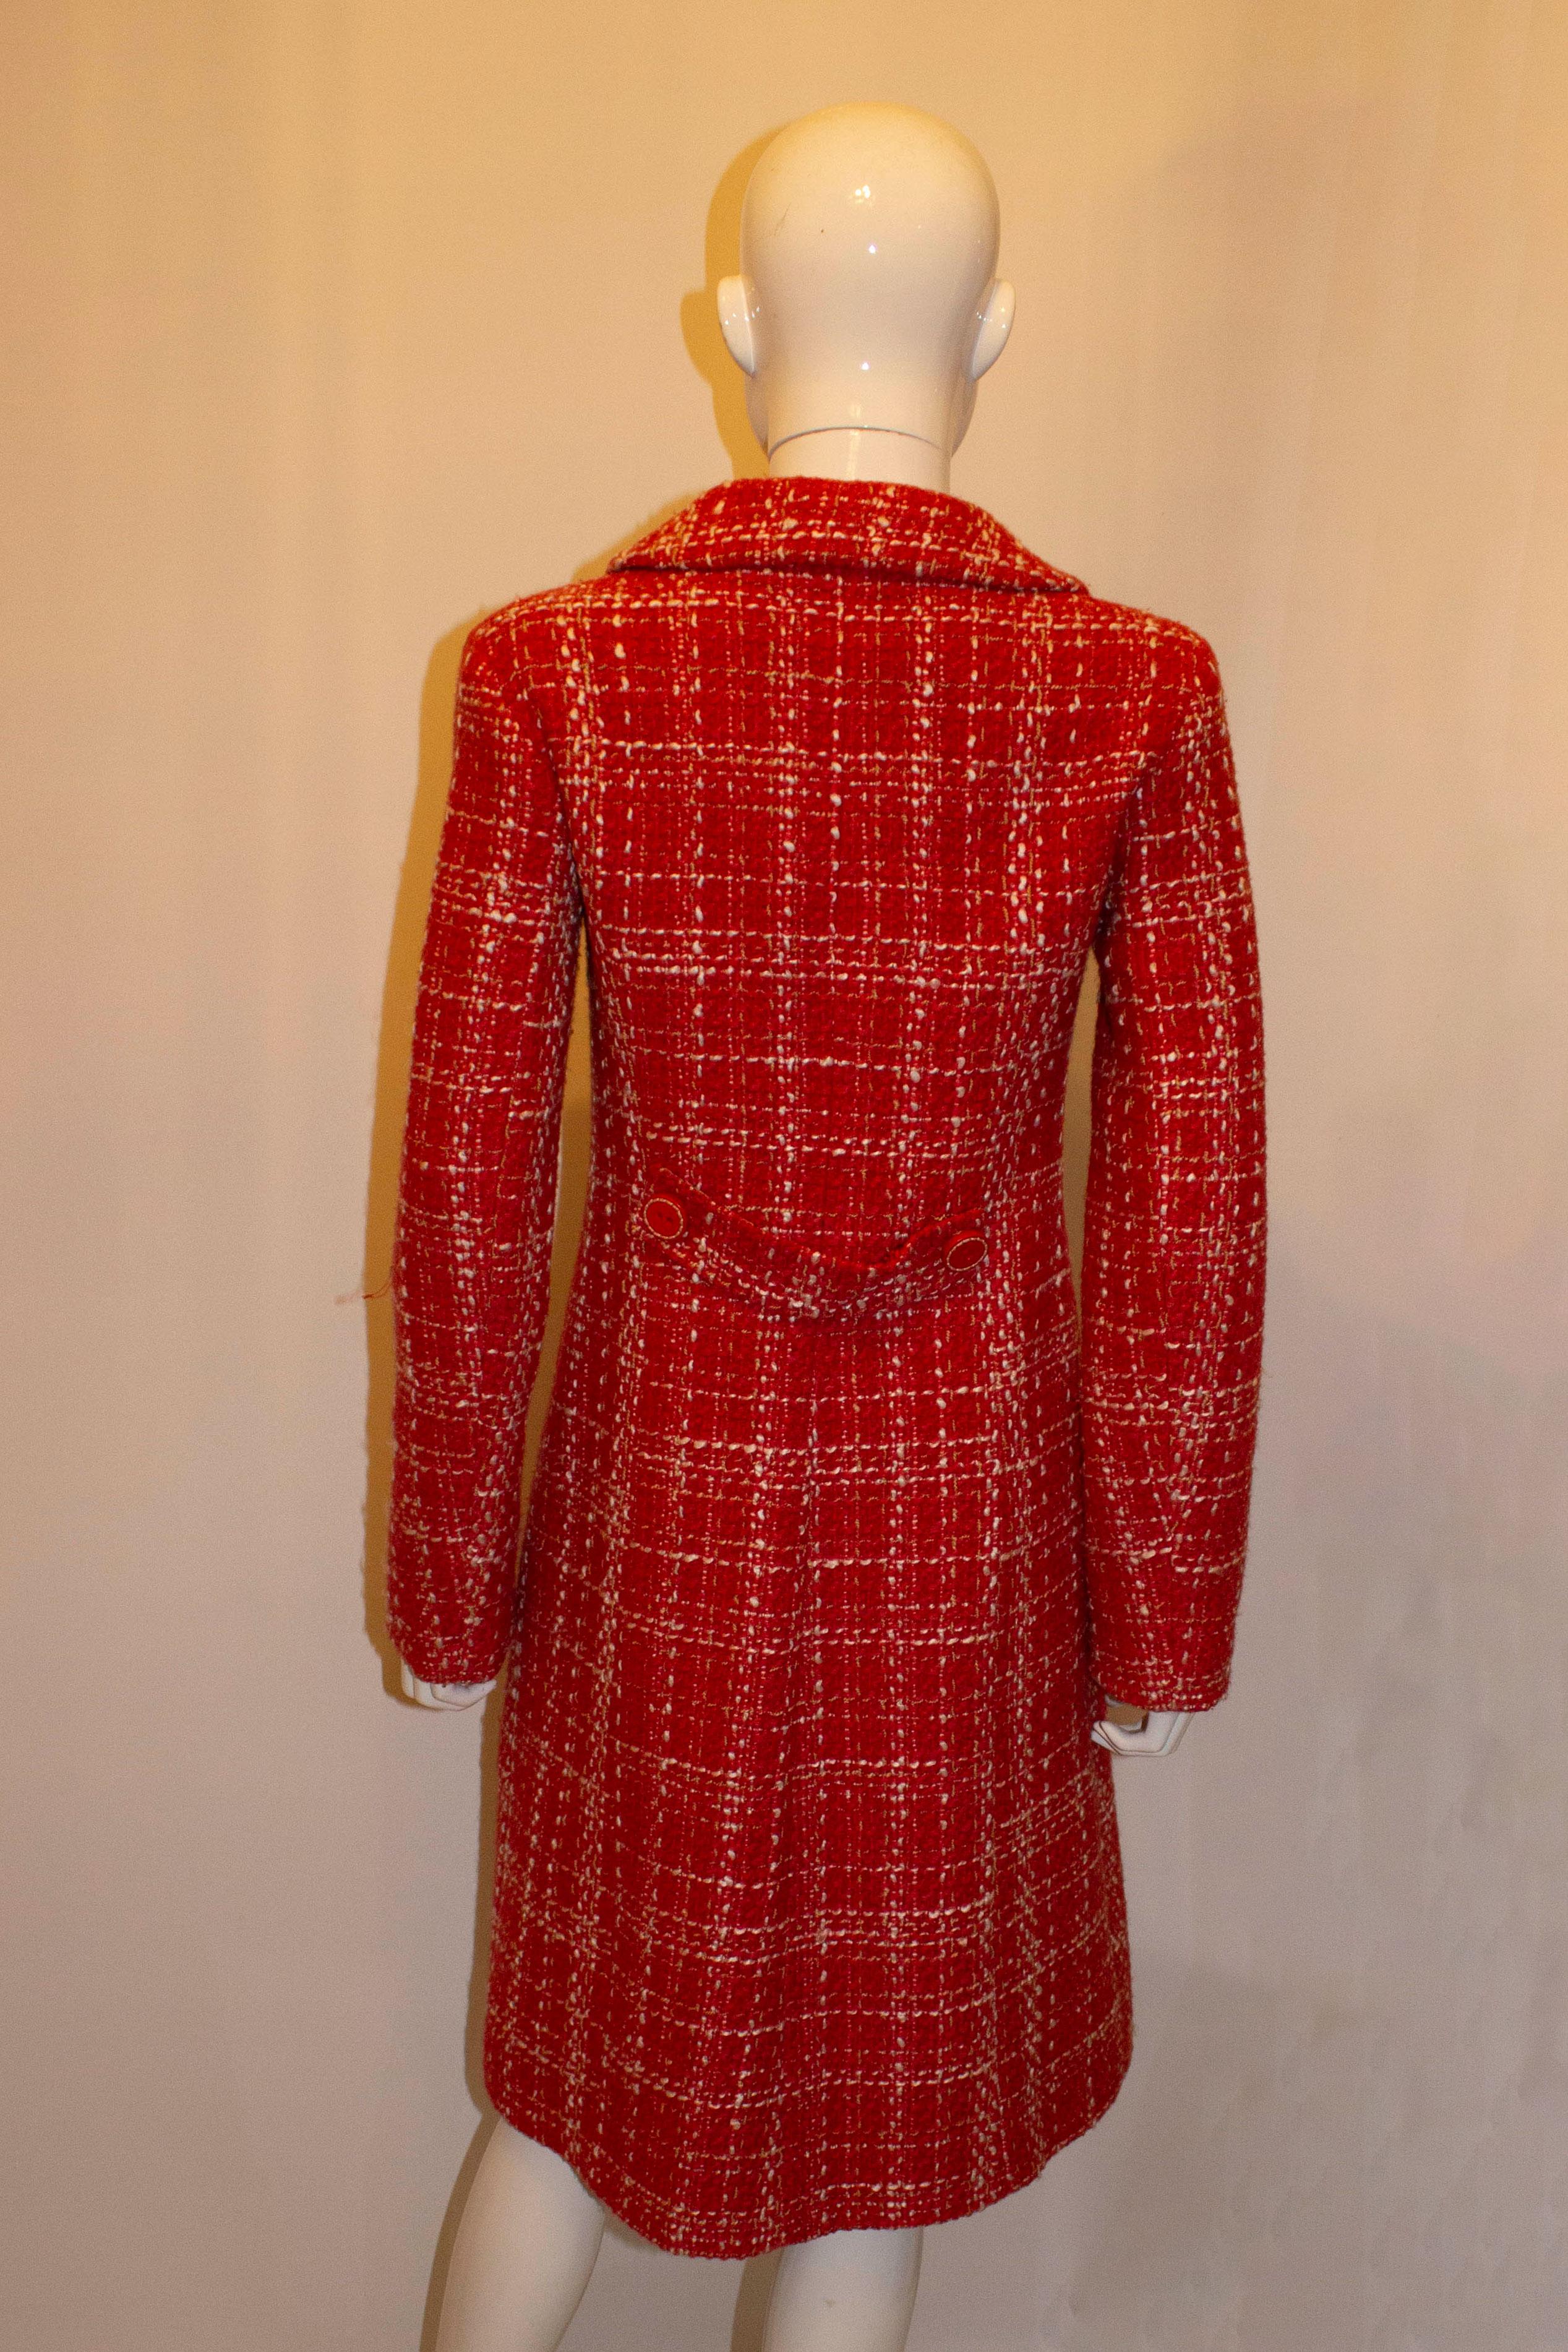 Rouge Tara Jamon Manteau rouge et blanc avec une merveilleuse doublure en vente